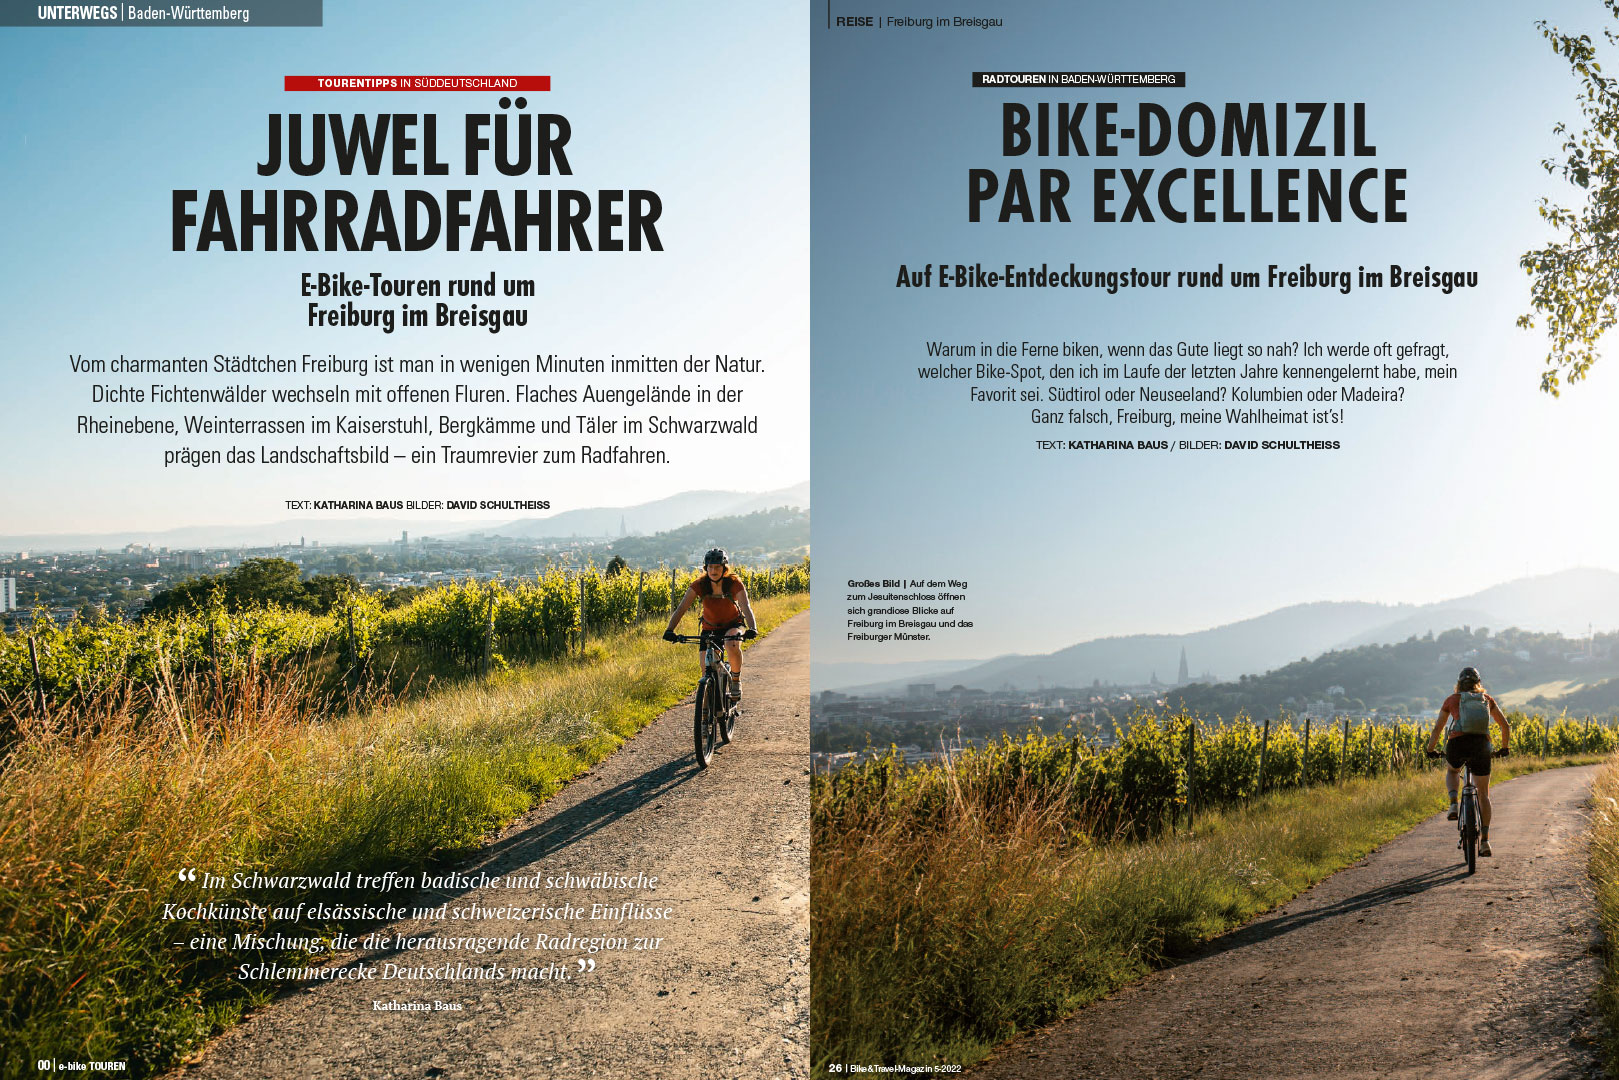 Zwei Beiträge in den Magazinen Bike&Travel und e-bike TOUREN